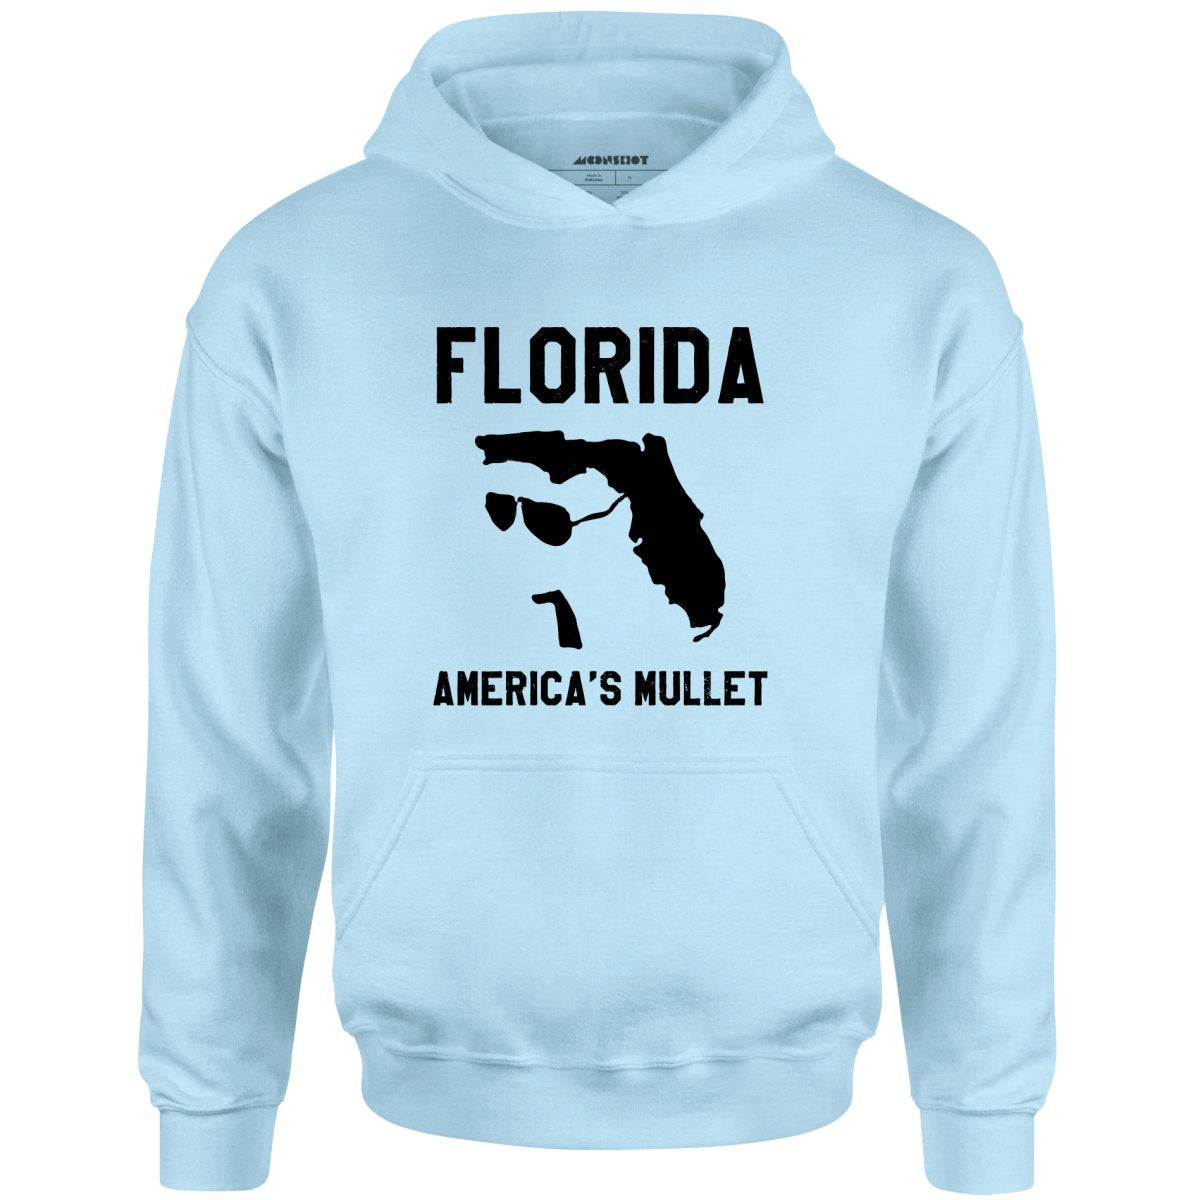 Florida America's Mullet - Unisex Hoodie